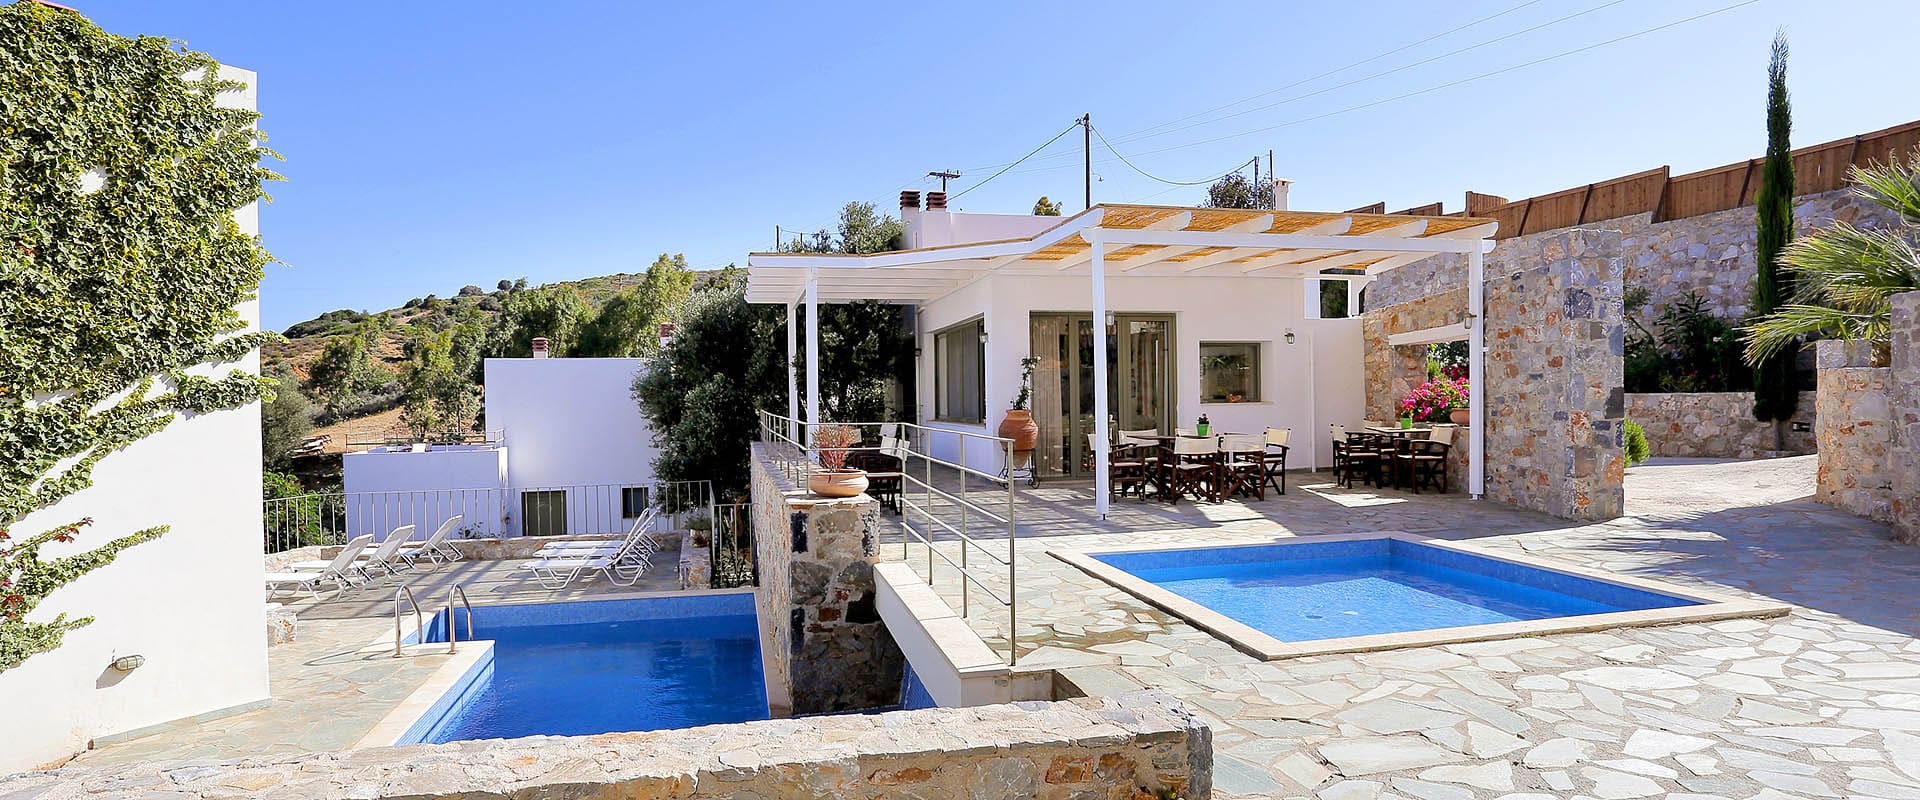 Hôtel de vacances écotouristique sur l'île de Crète en Grèce